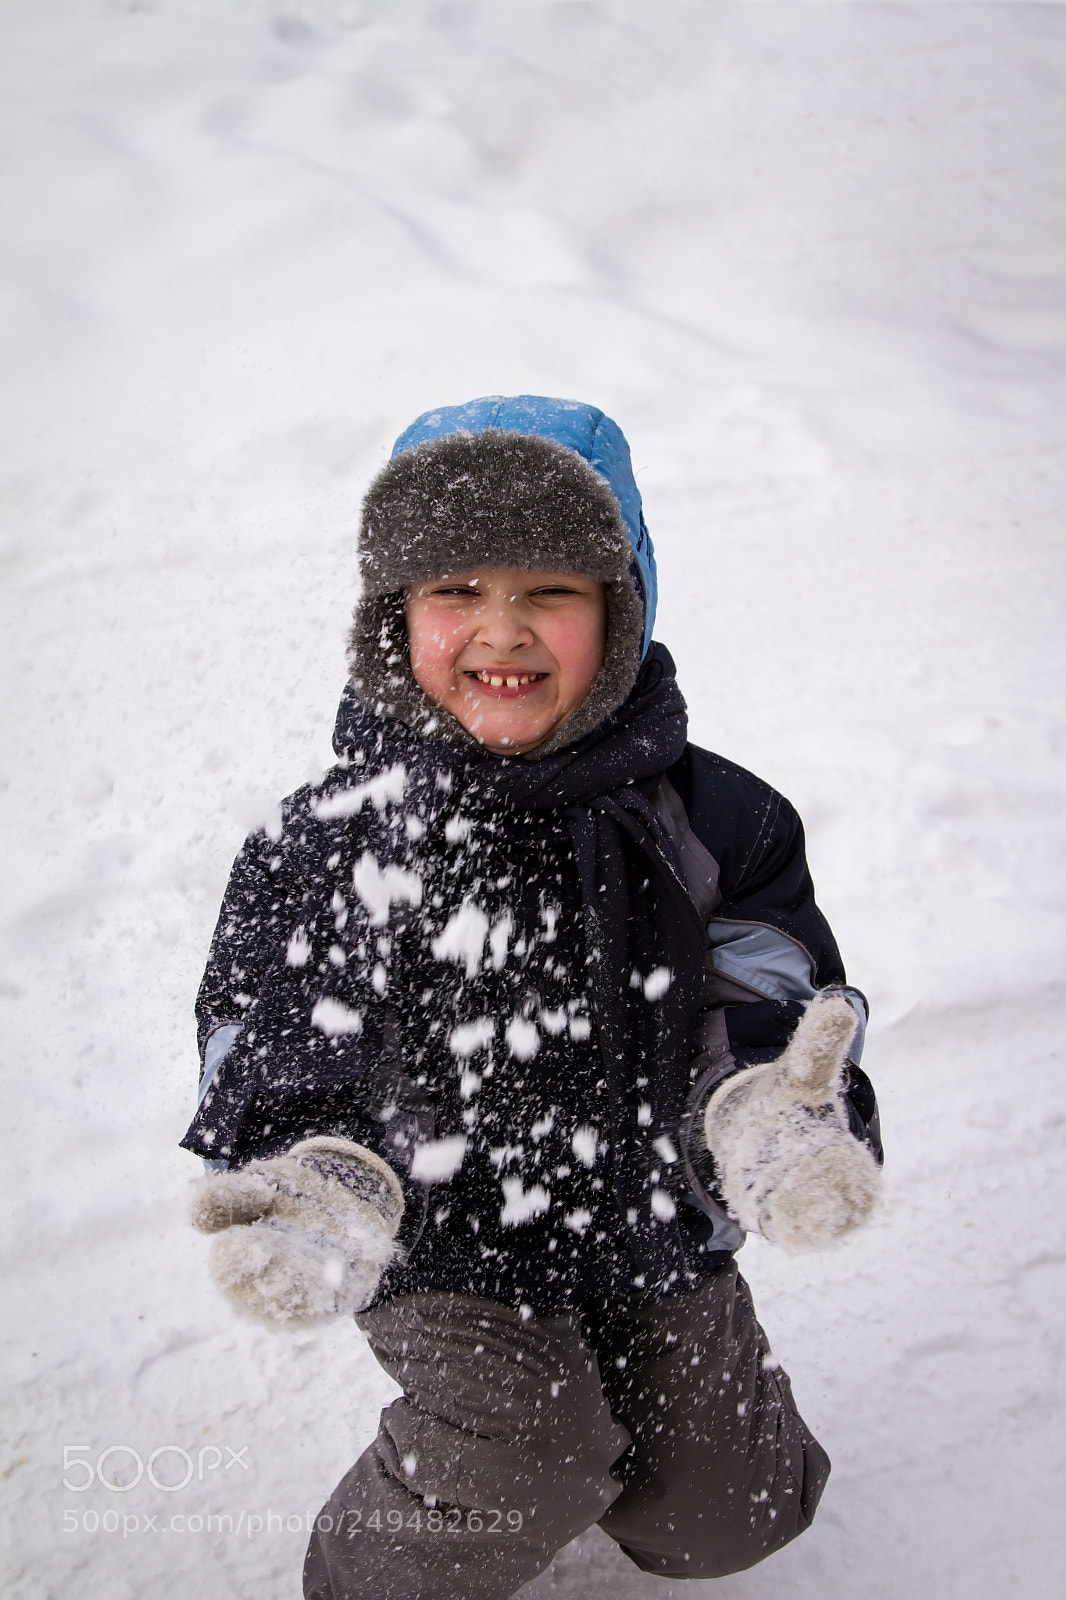 Canon EOS 7D sample photo. The boy throws snow photography